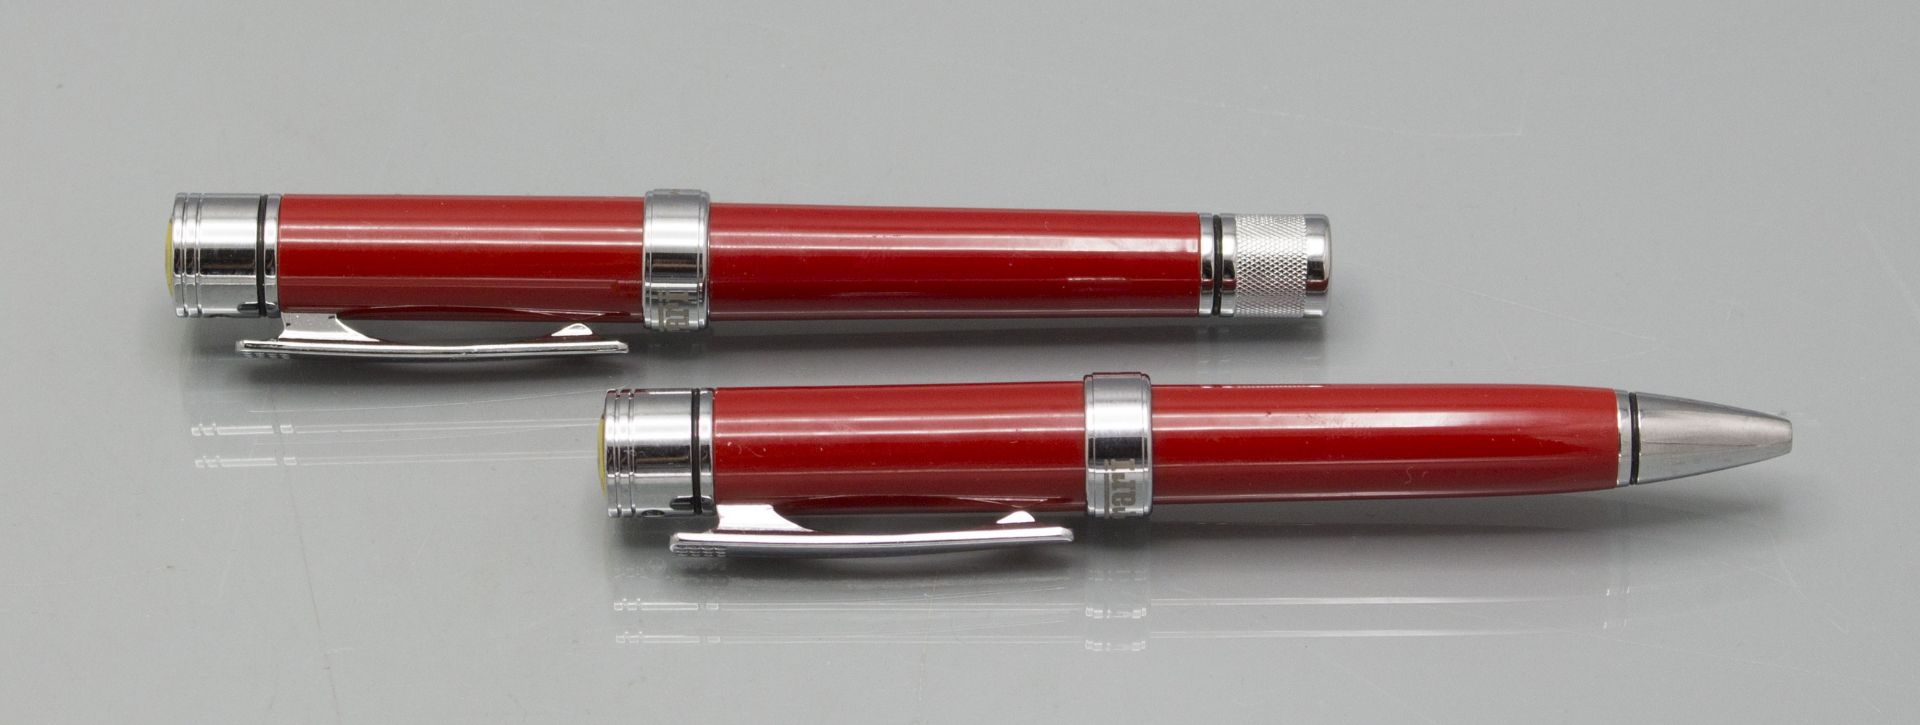 Ferrari Kugelschreiber und Füller / A Ferrari fountain pen and ballpoint pen - Image 2 of 4